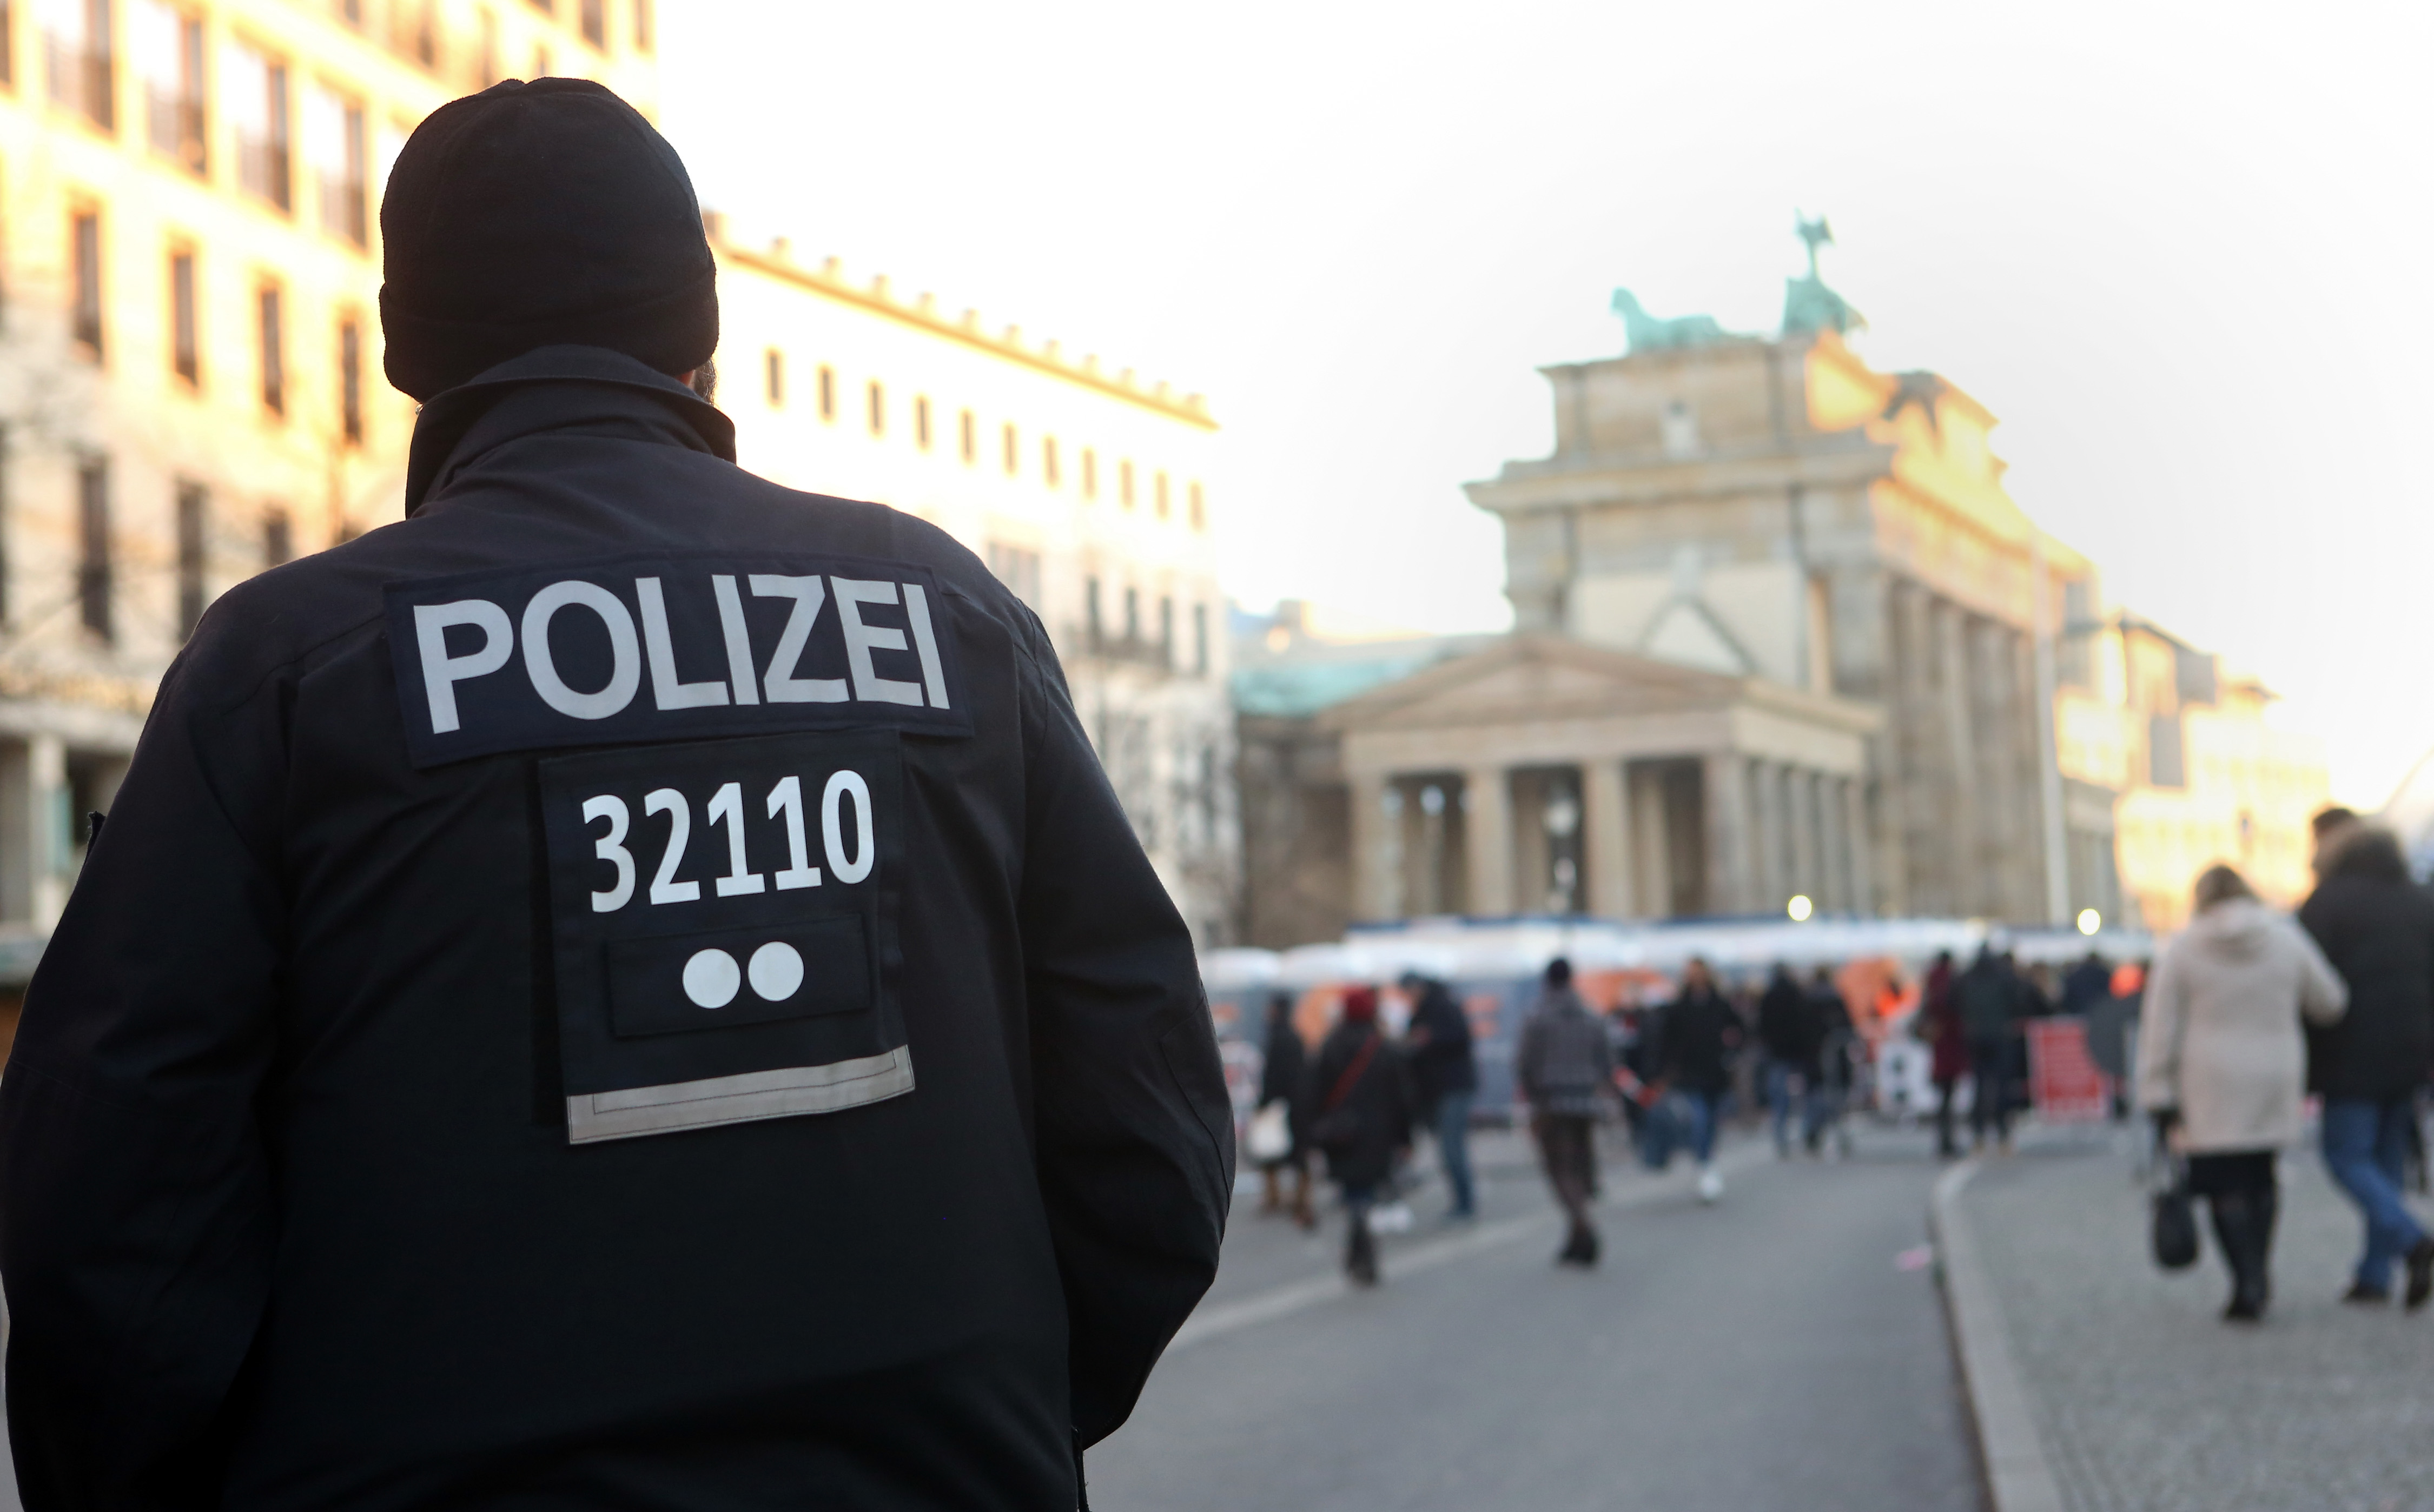 Elf Strafverfahren gegen Amri seit Einreise nach Deutschland – Darunter versuchte Tötung, Körperverletzung, Verstoß gegen das Asylgesetz